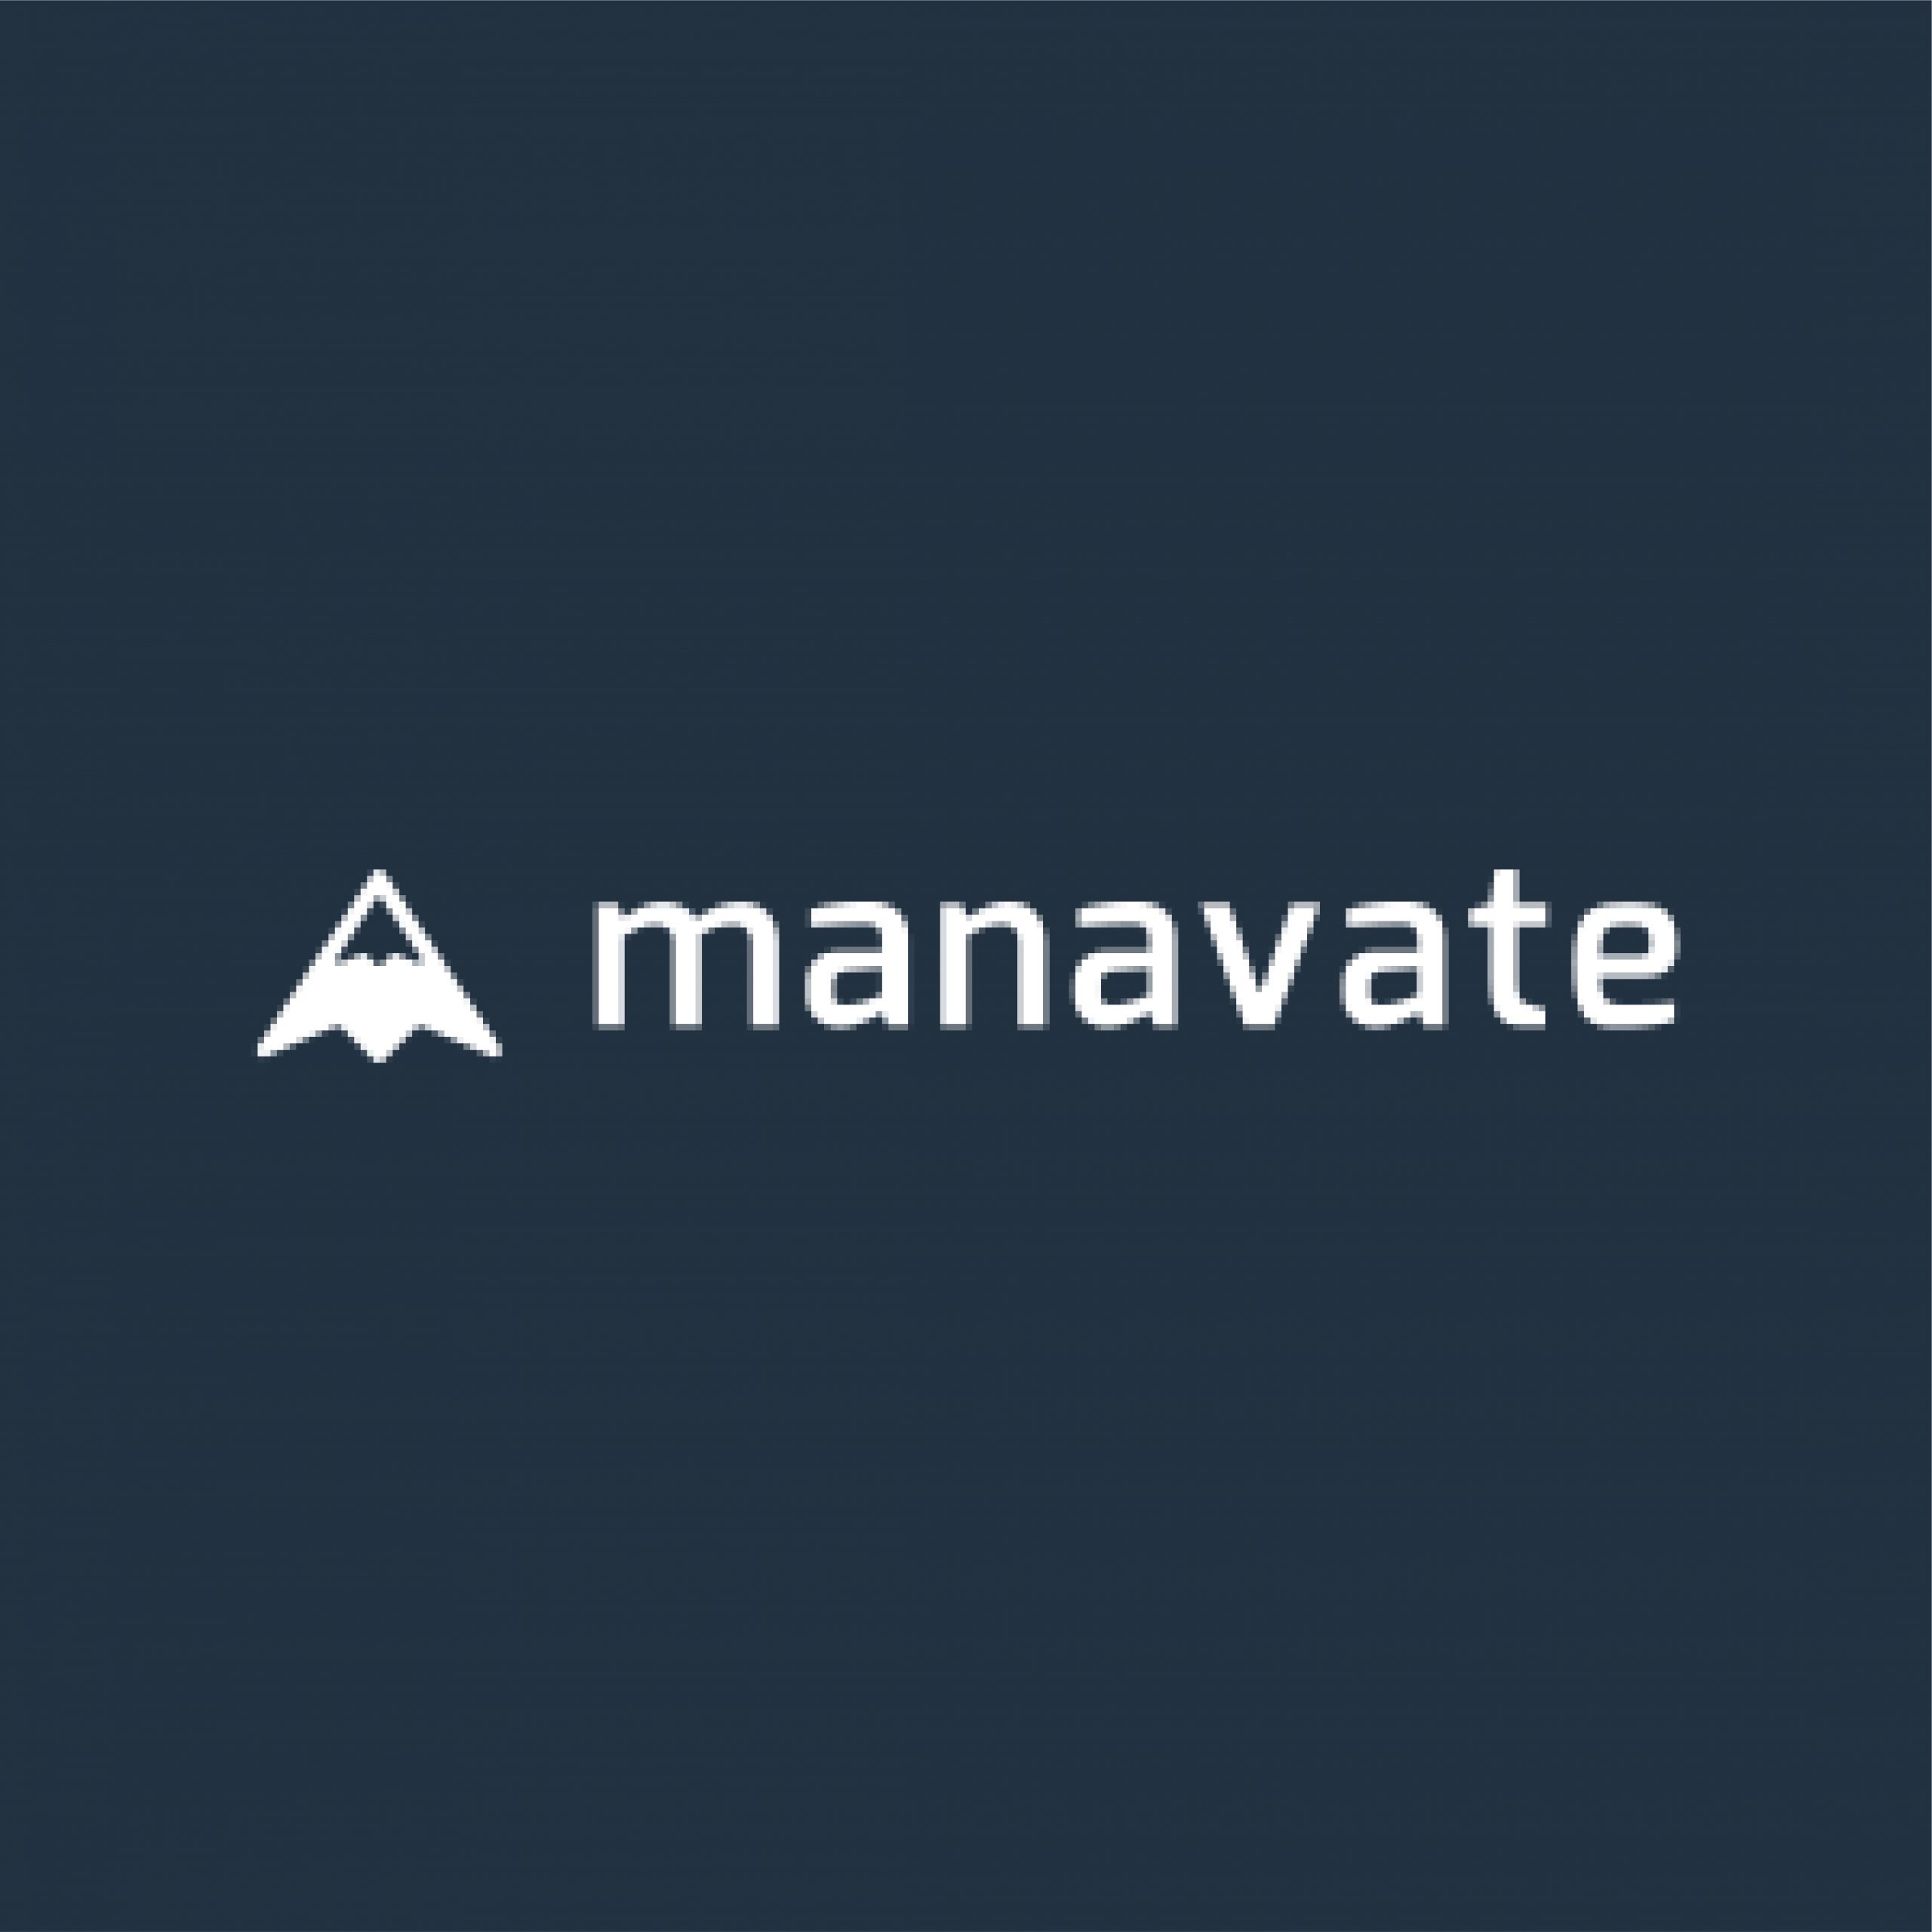 Manavate